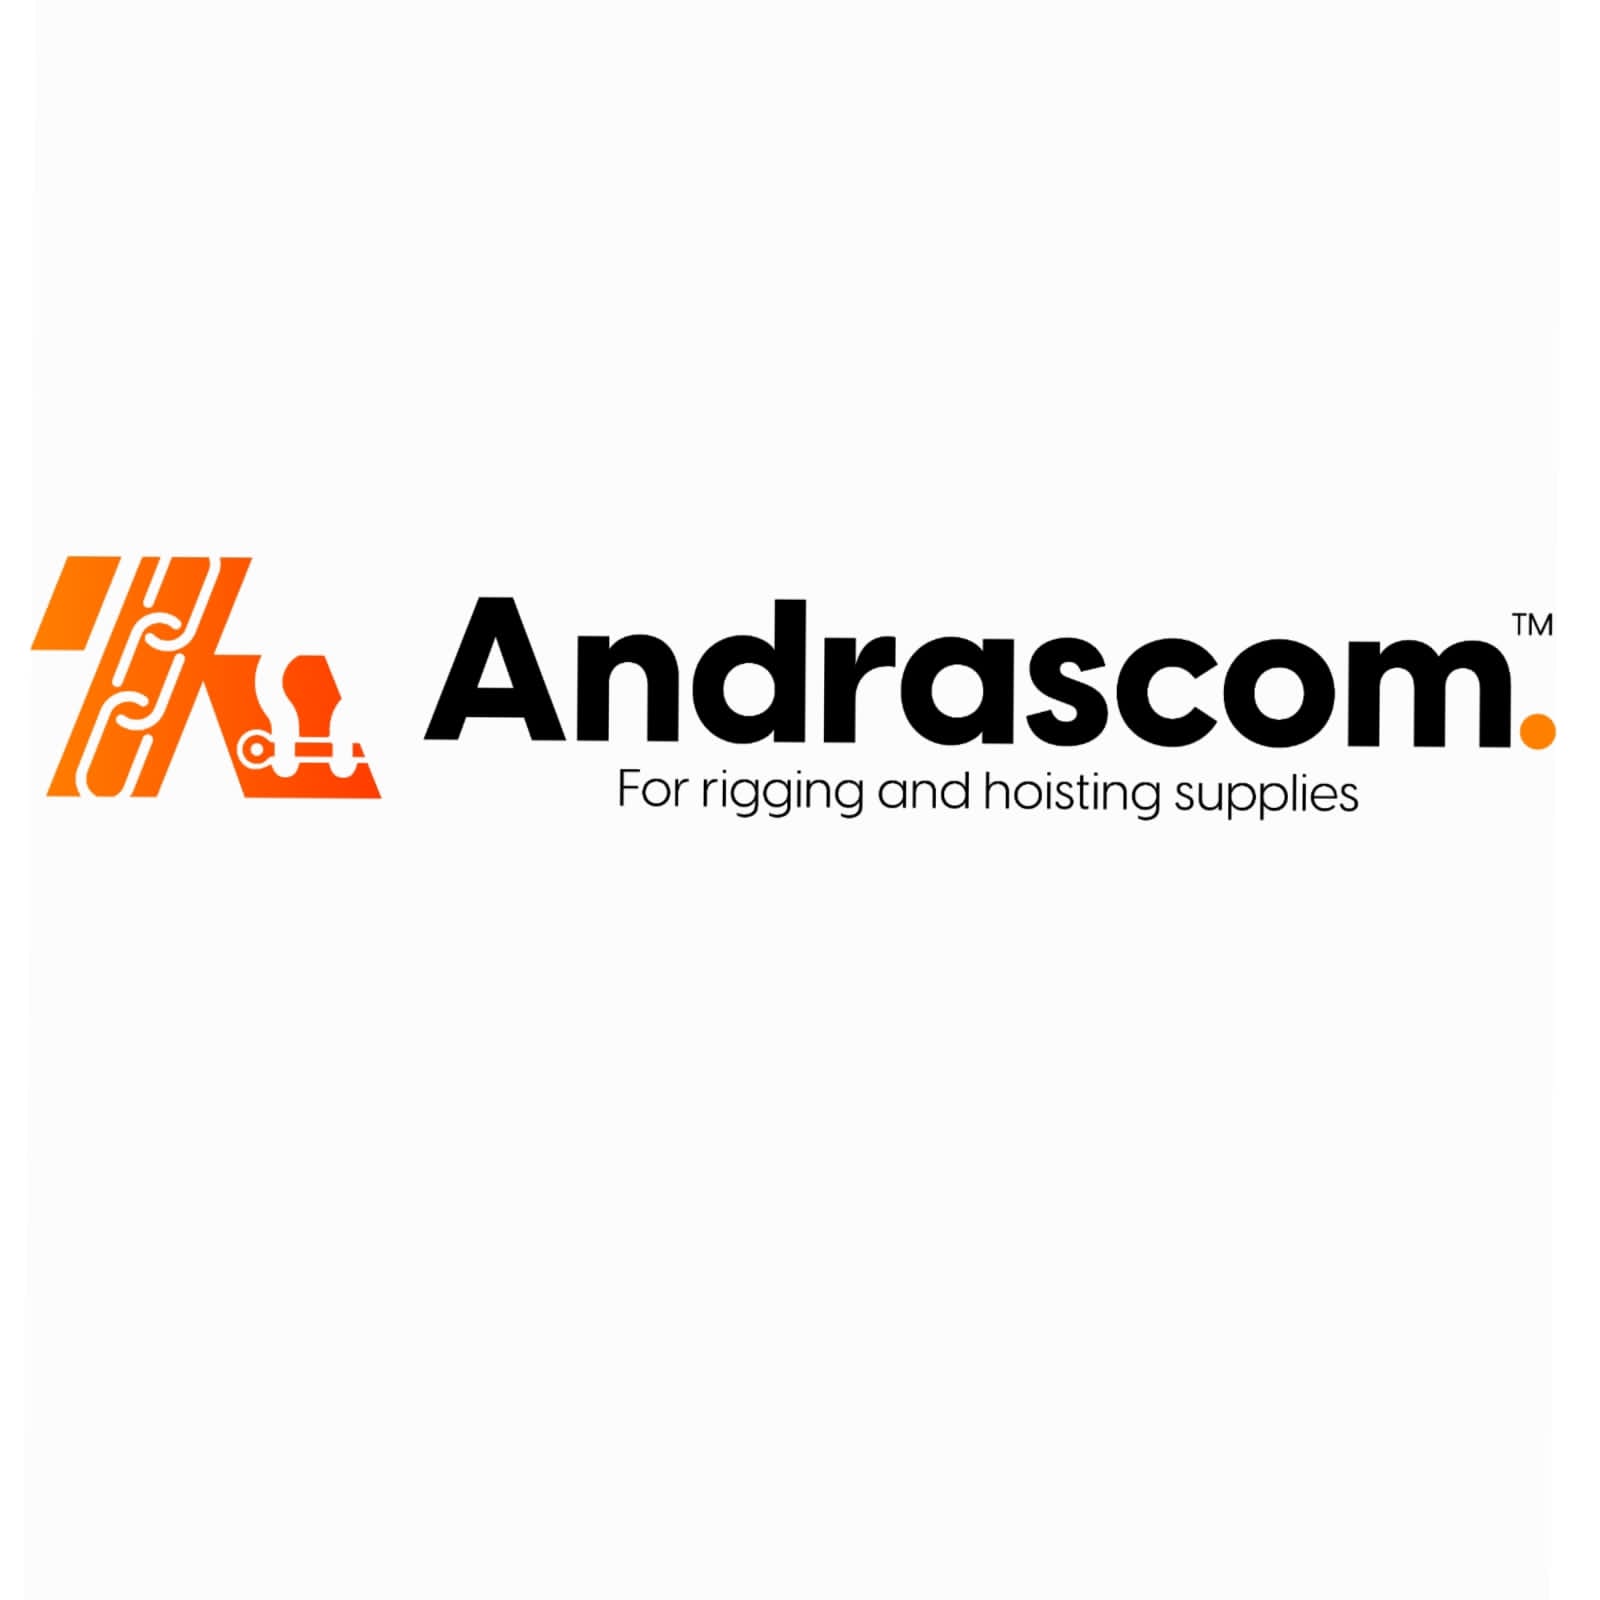 Andrascom